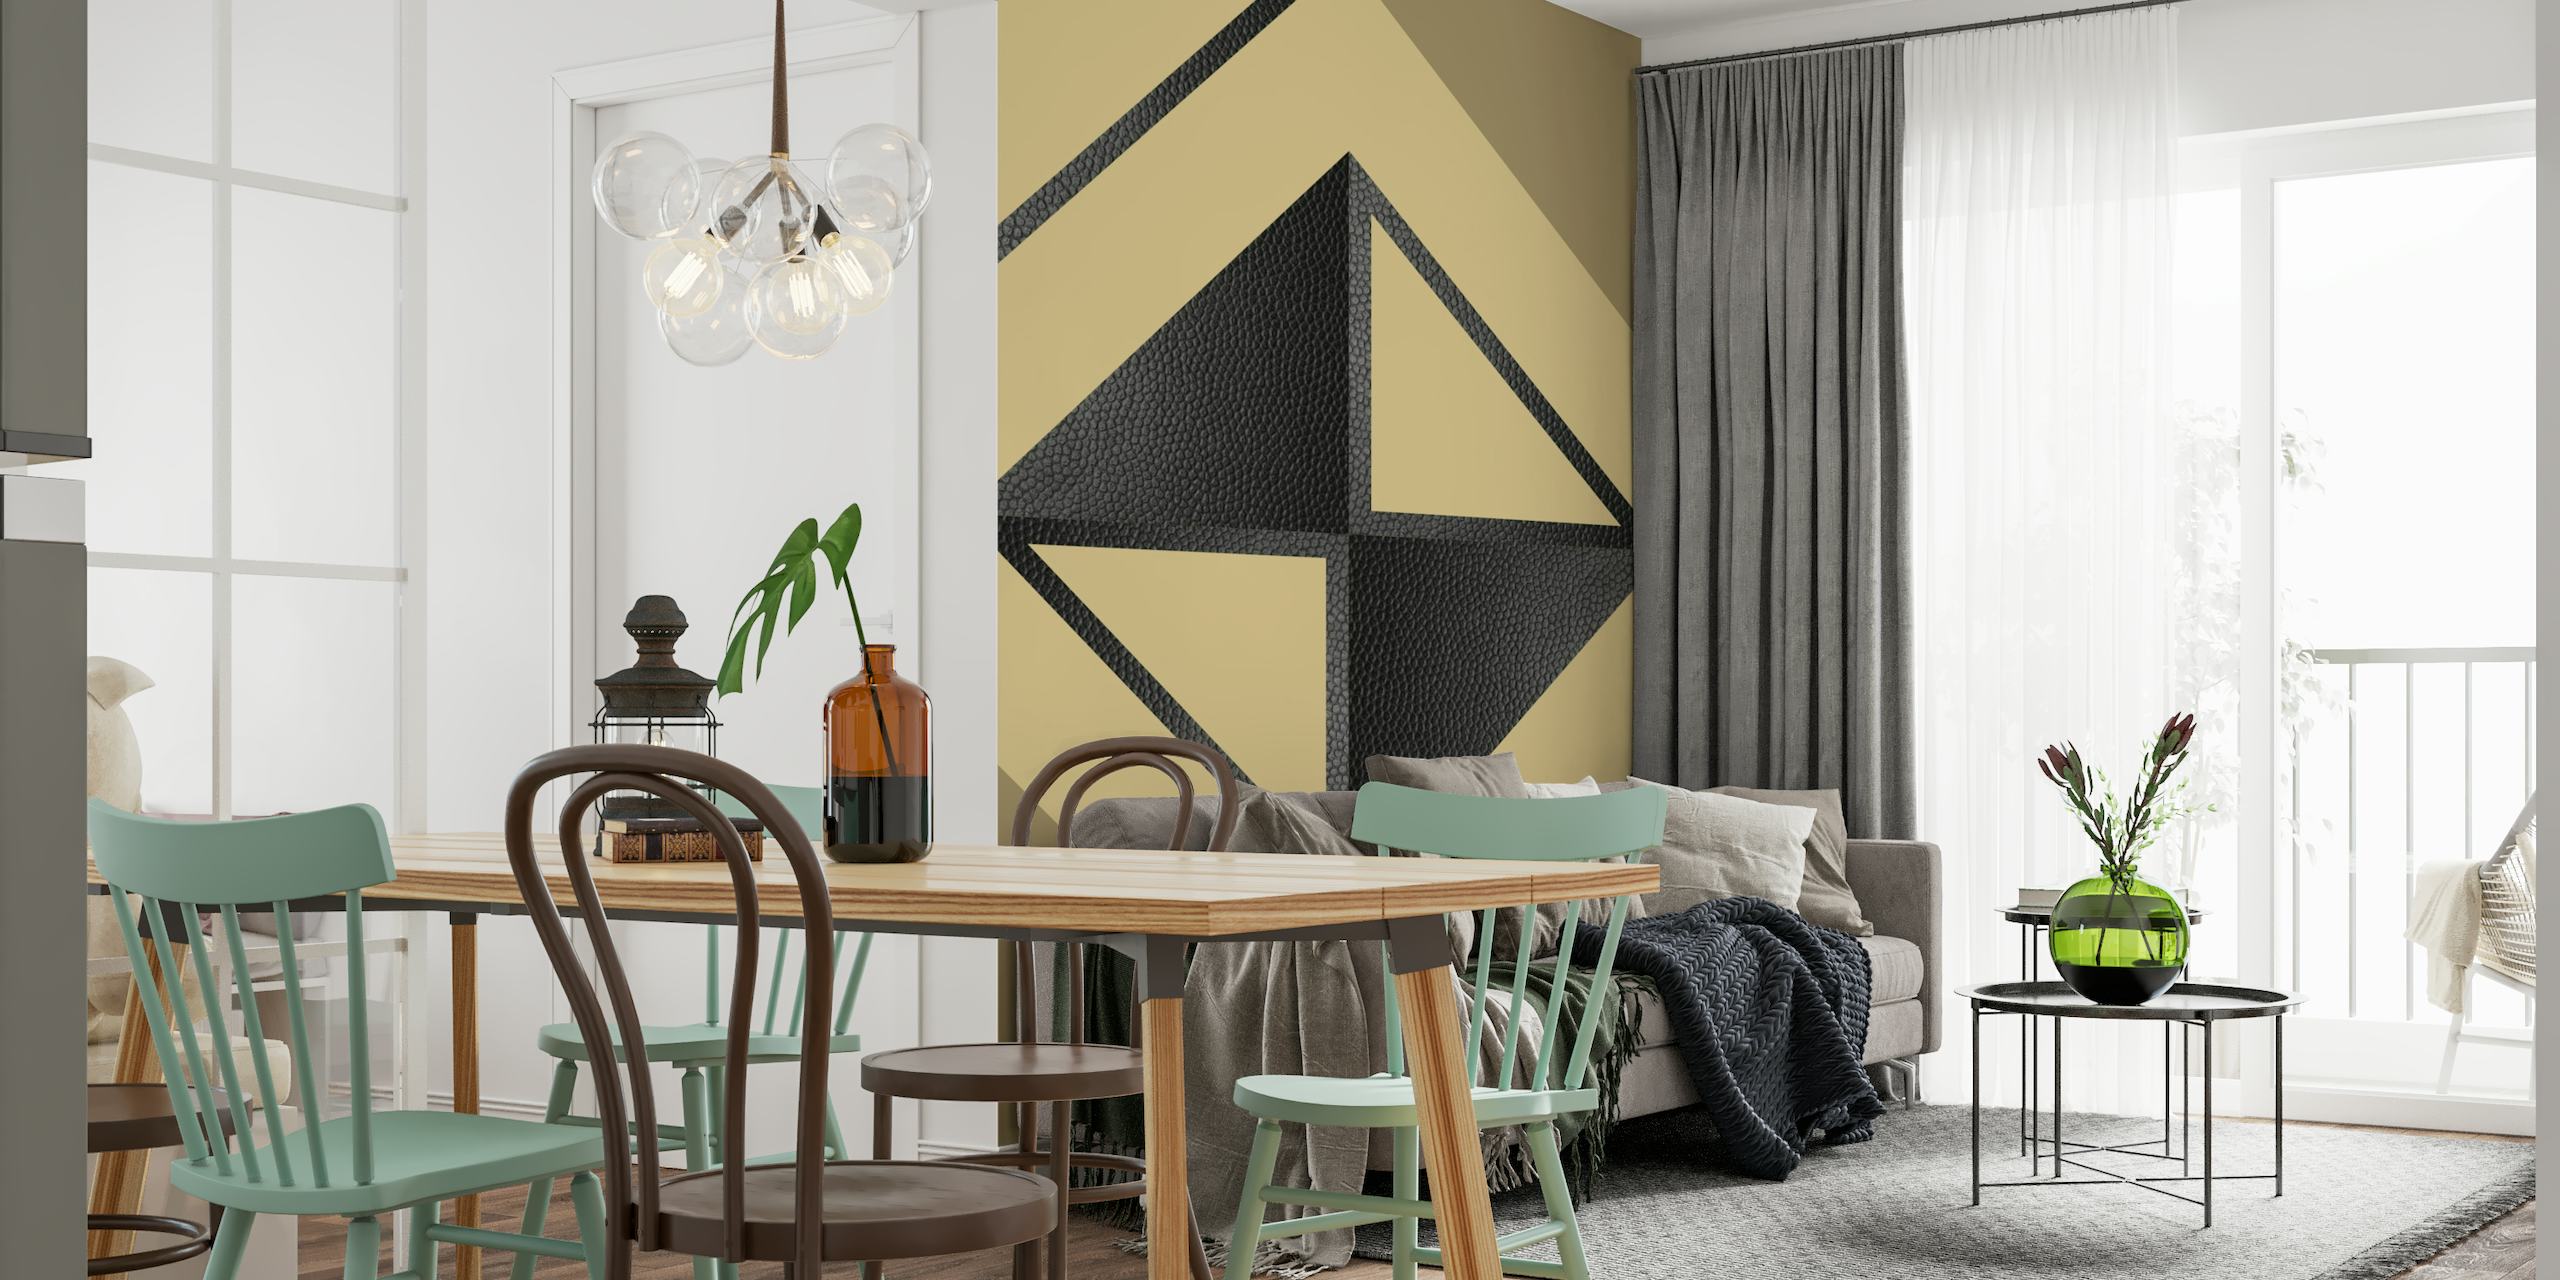 Decorazione murale geometrica astratta gialla e nera con triangoli e forme minimaliste